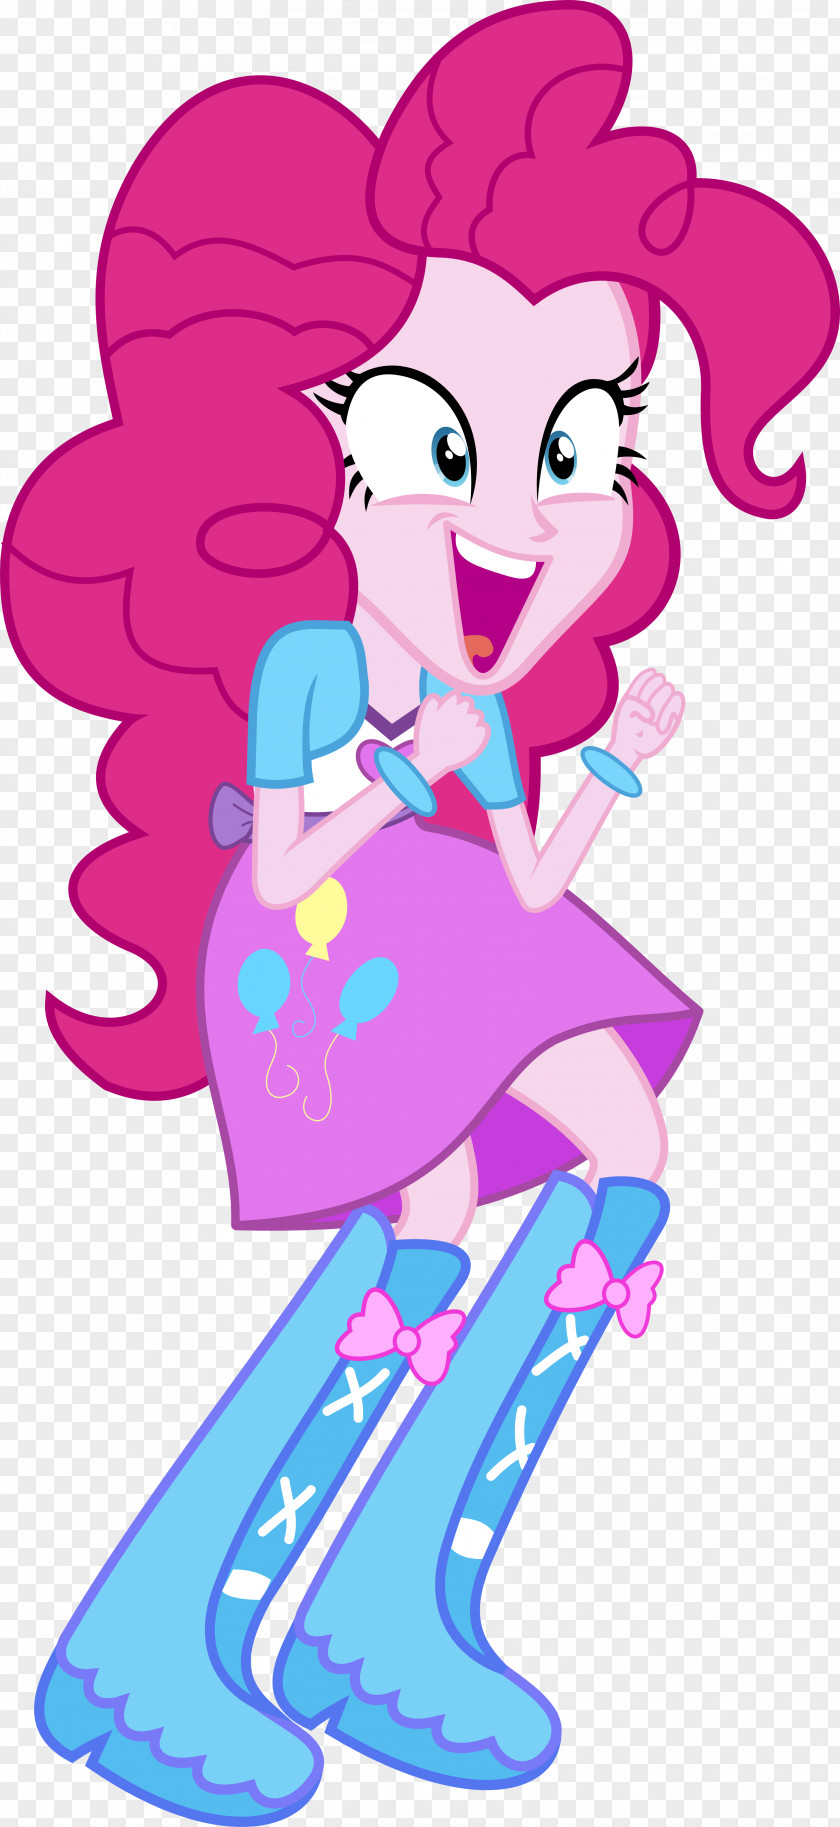 My Little Pony Pinkie Pie Applejack Pony: Equestria Girls Princess Luna PNG